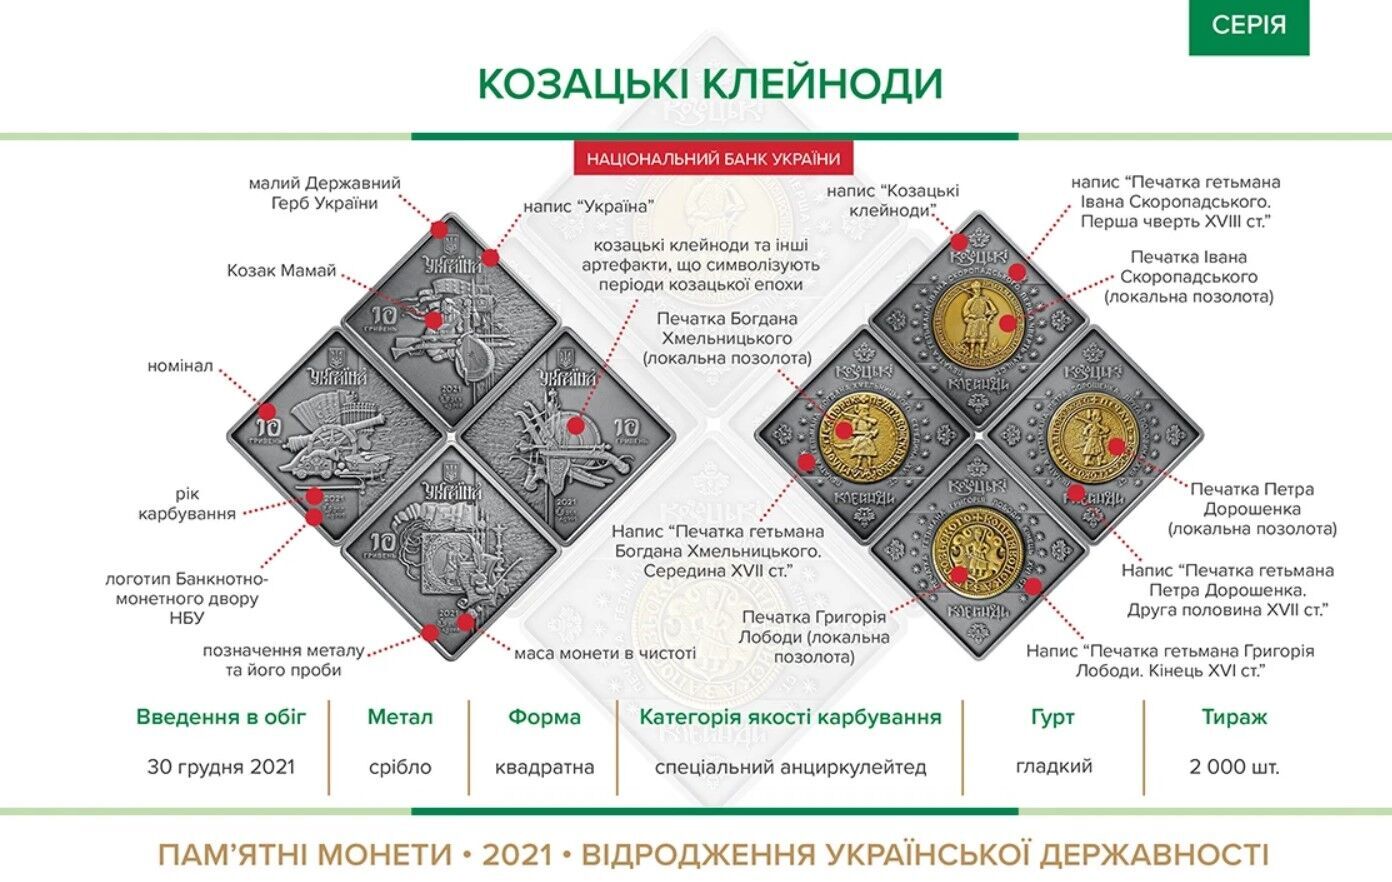 Національний банк України випустив набір пам'ятних монет "Козацькі клейноди"